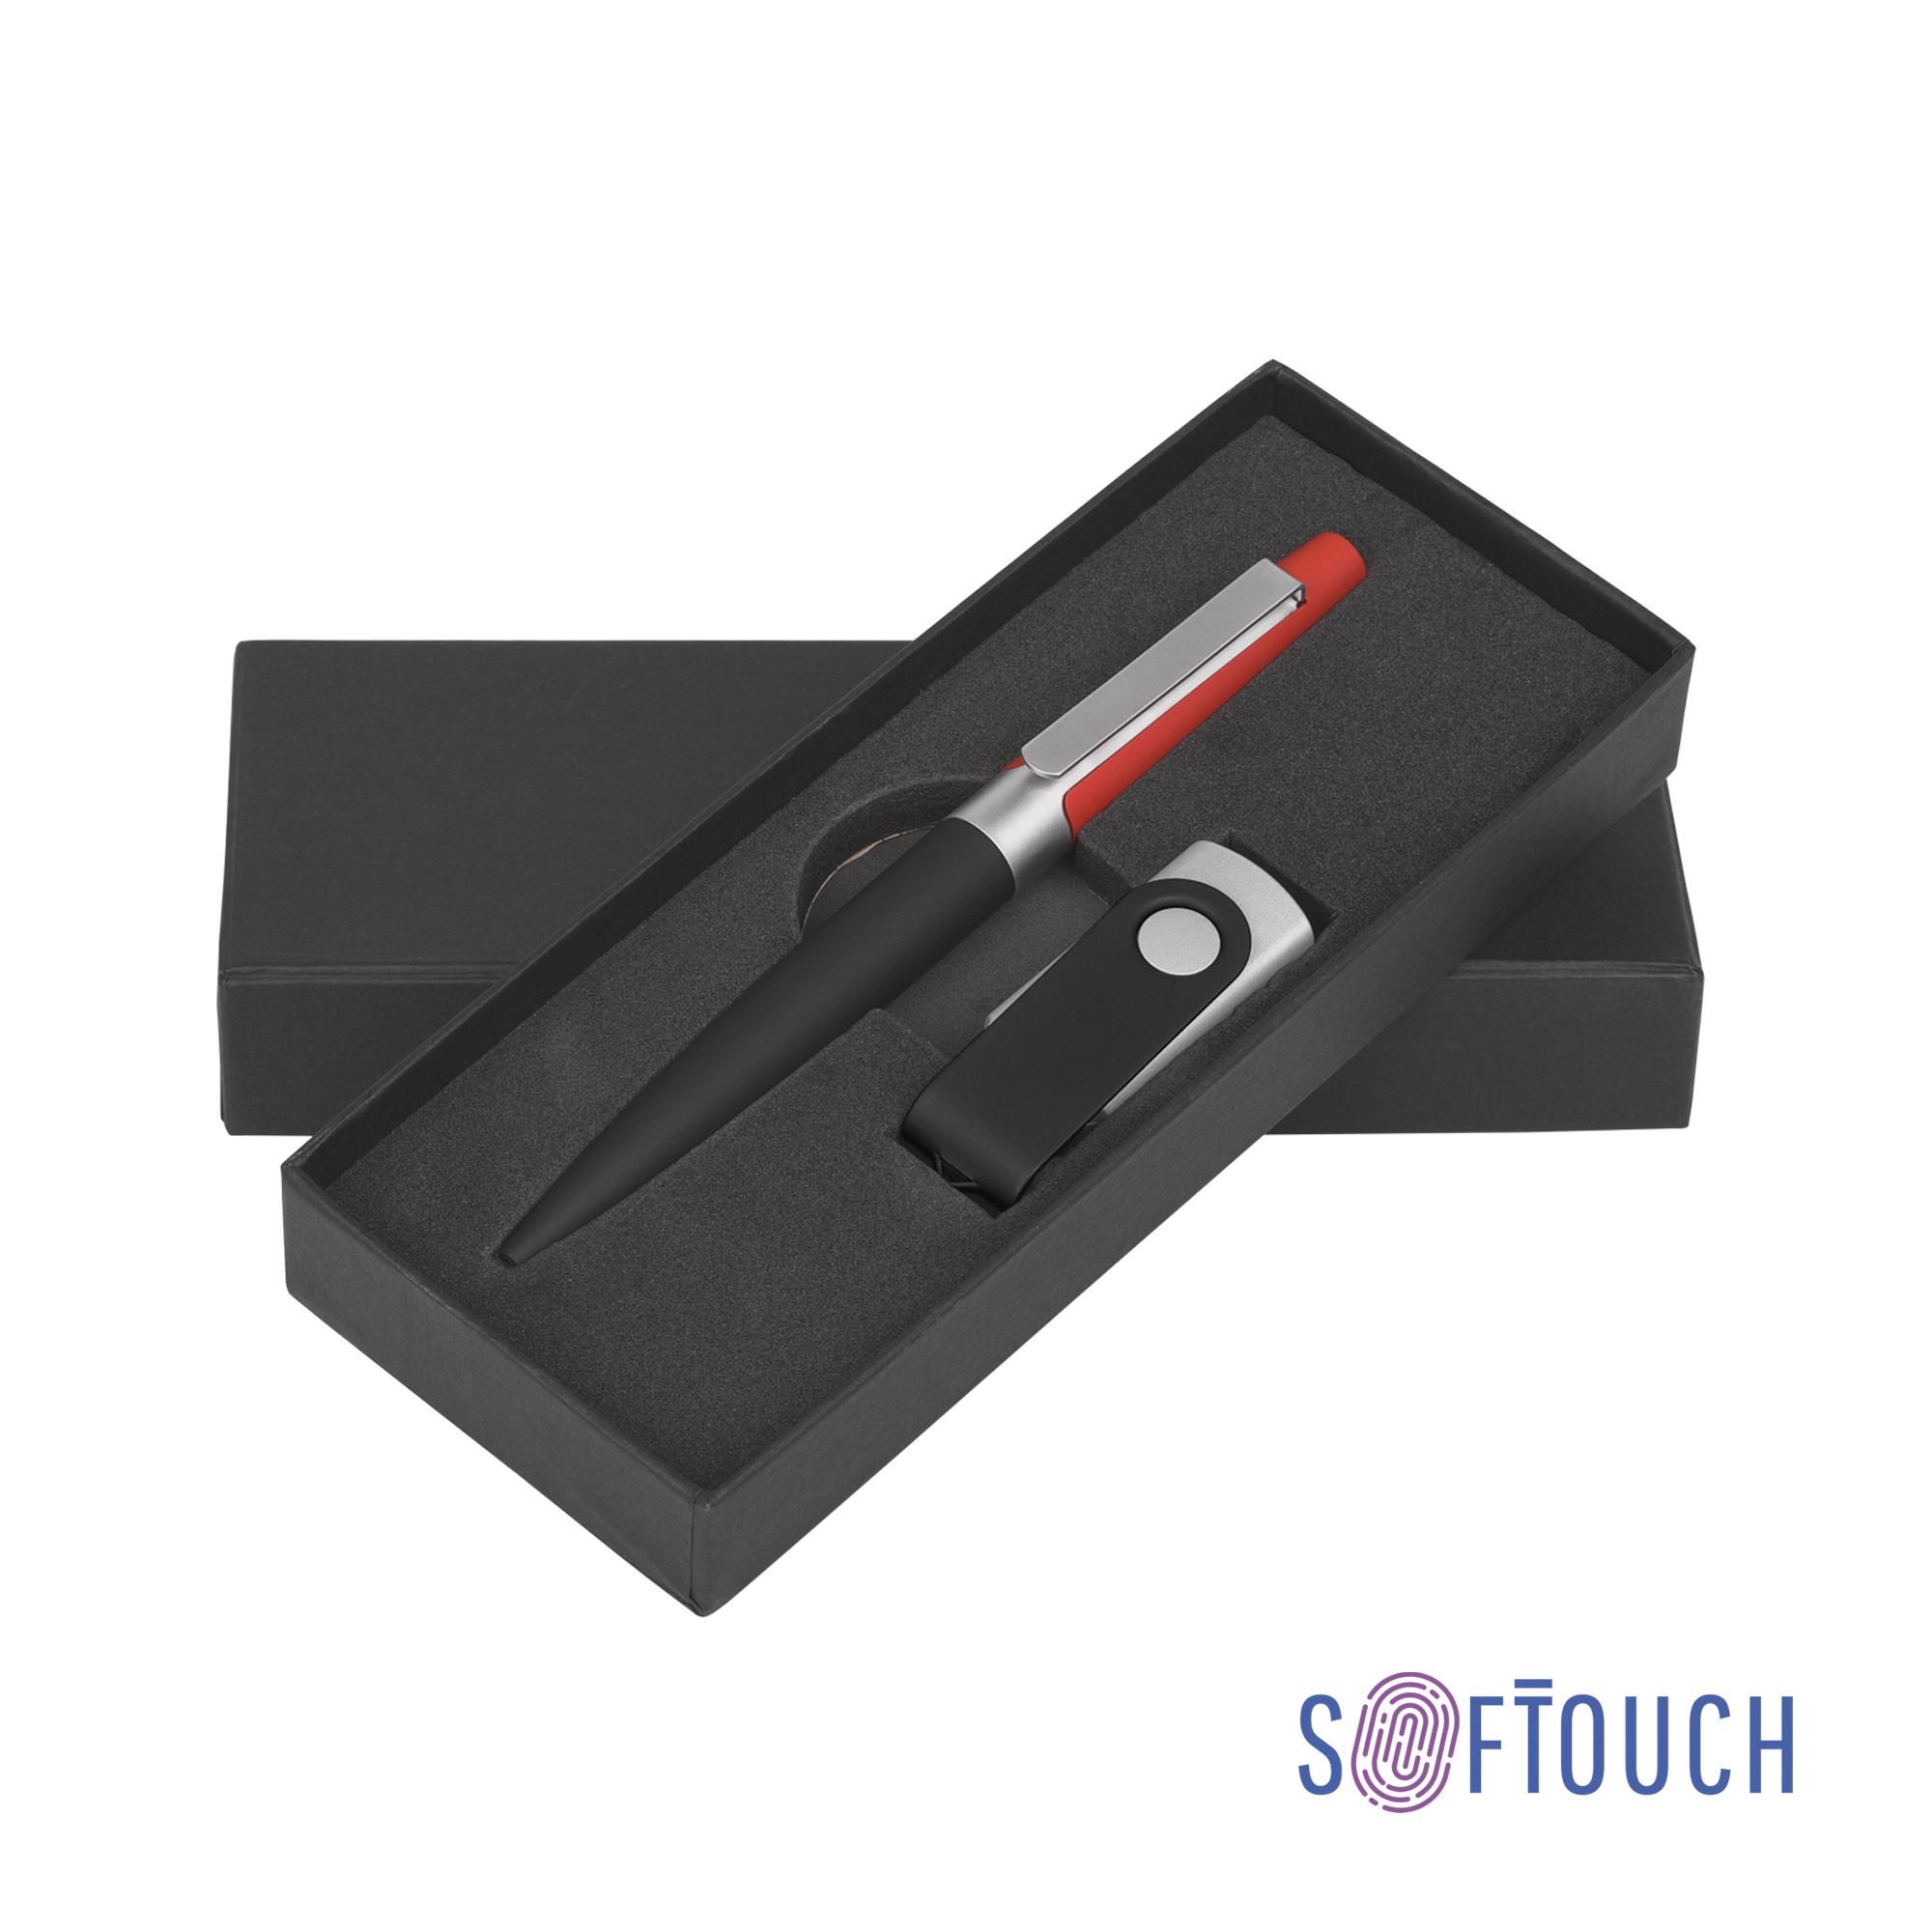 Набор ручка + флеш-карта 8 Гб в футляре, черный/желтый, покрытие soft touch #, цвет черный с красным